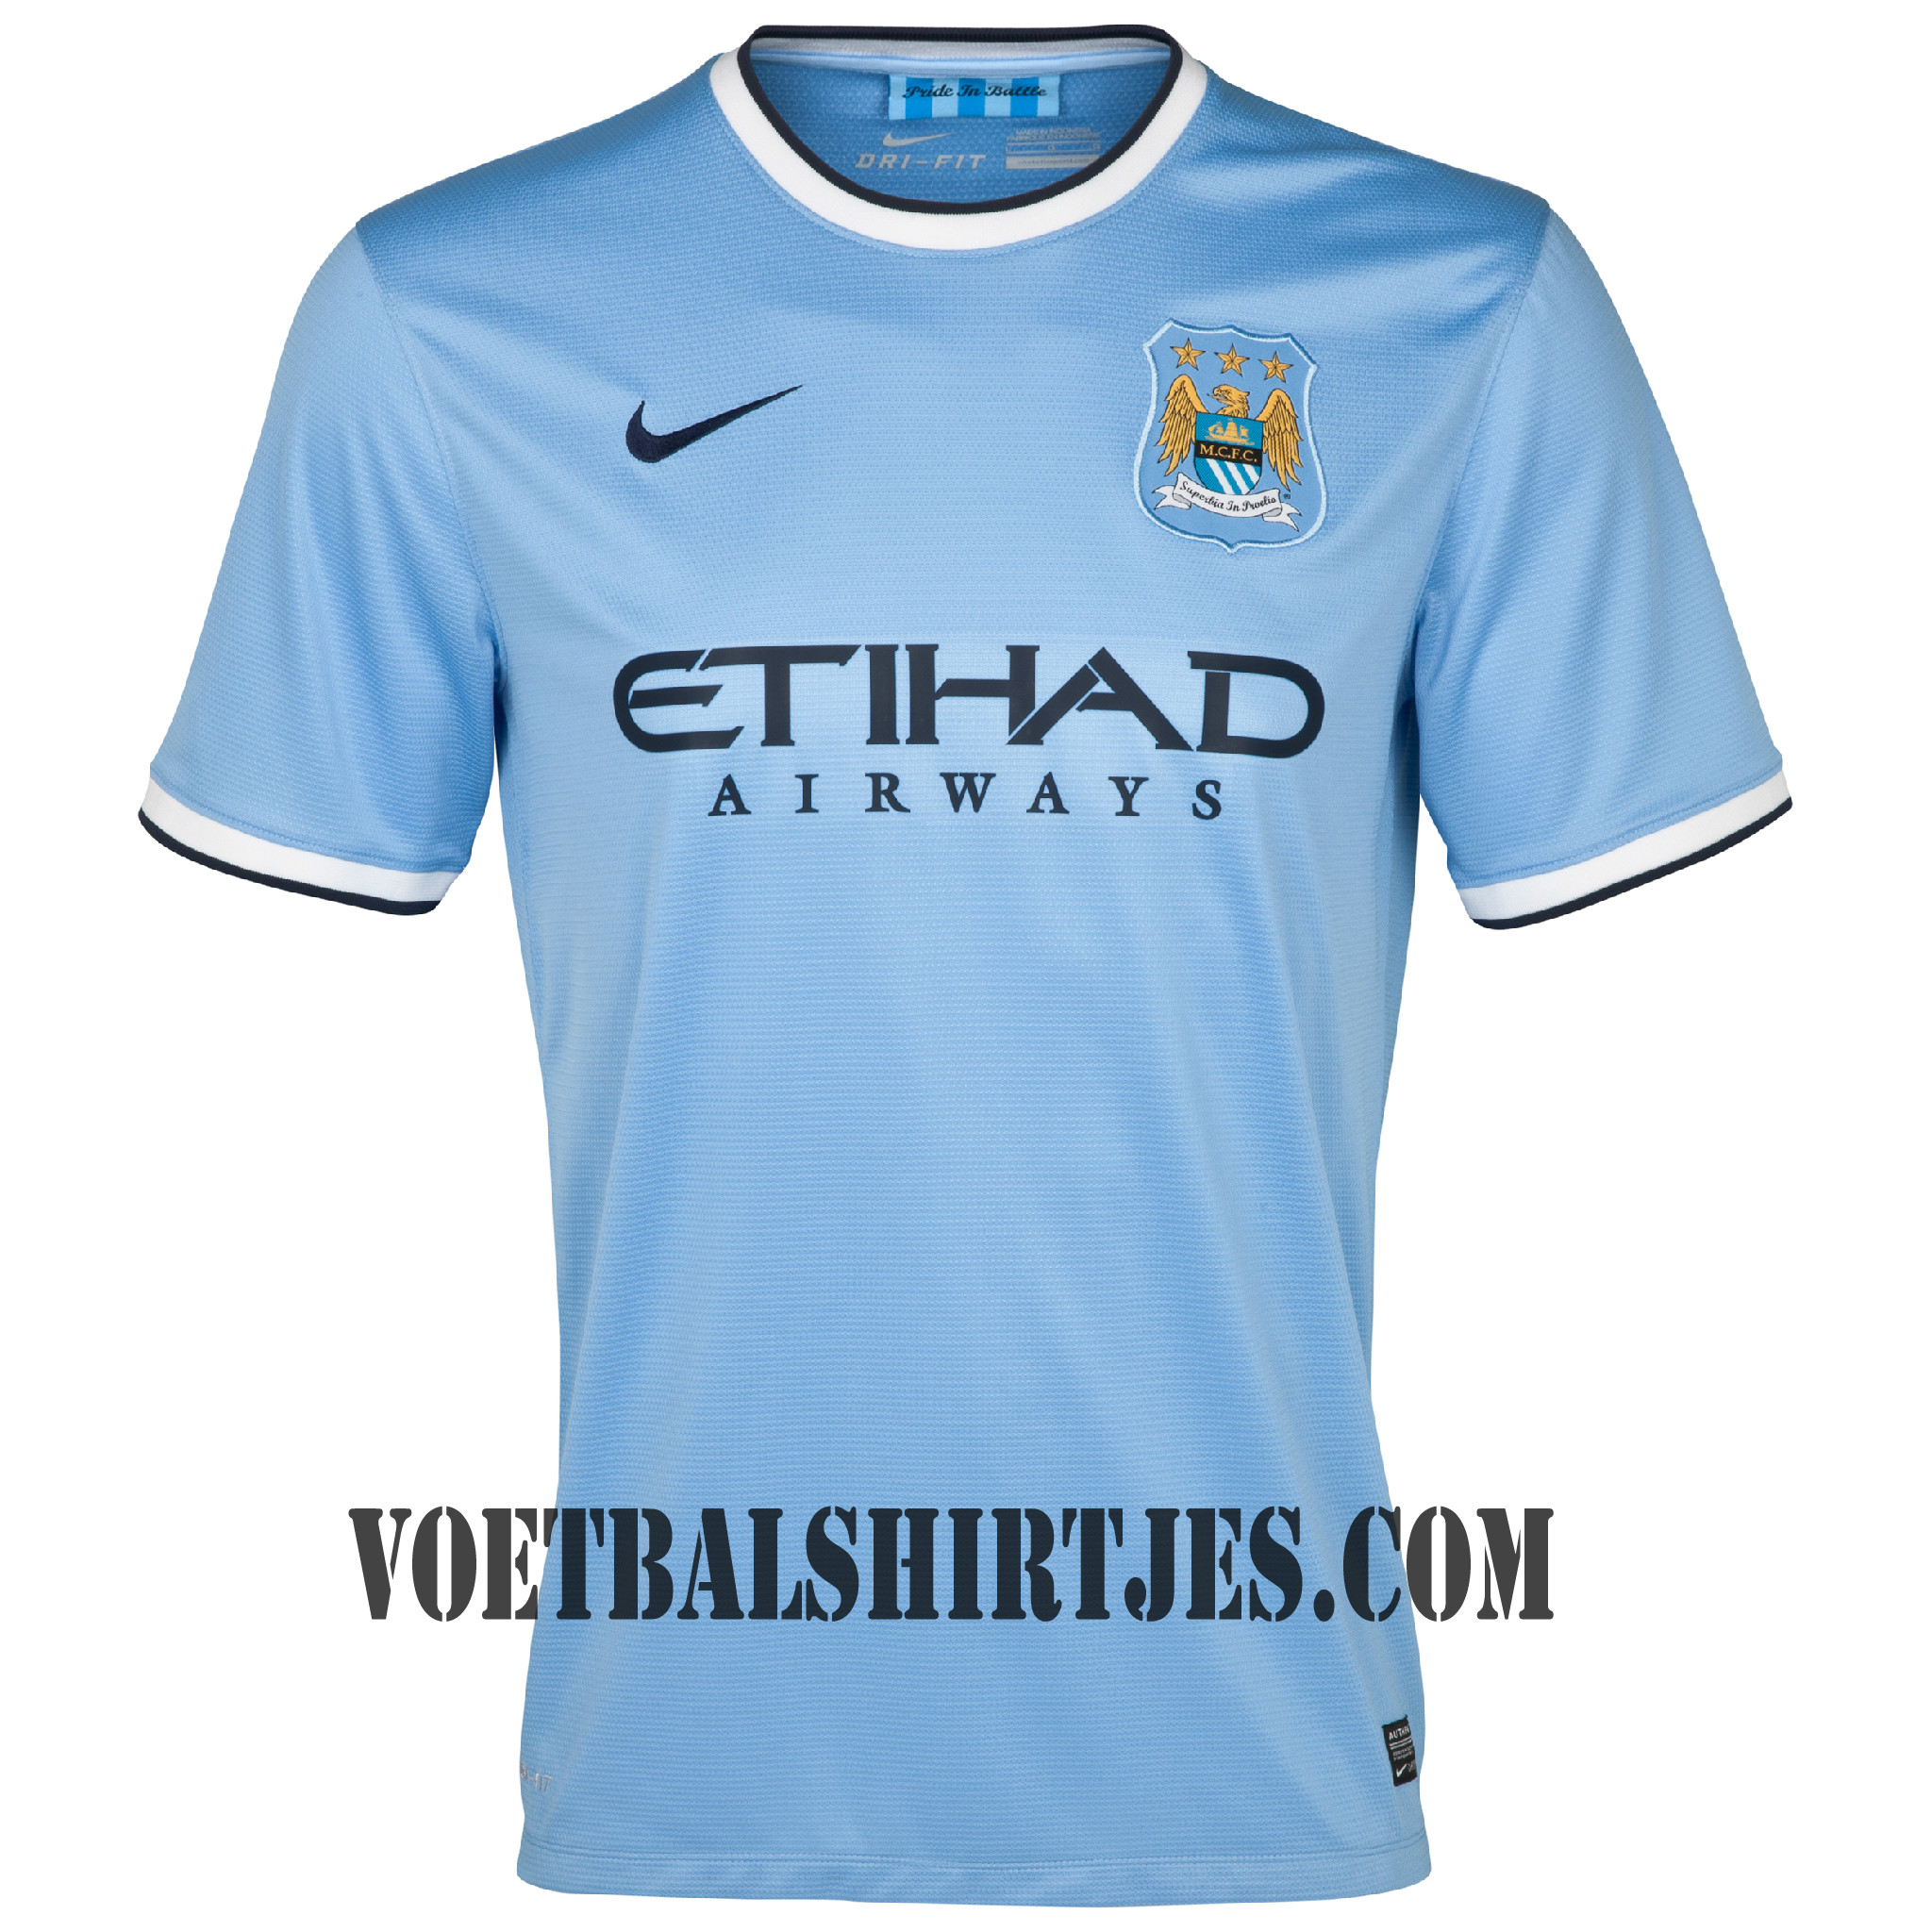 fundament En De lucht Manchester City thuisshirt 2013/2014 - Voetbalshirtjes.com